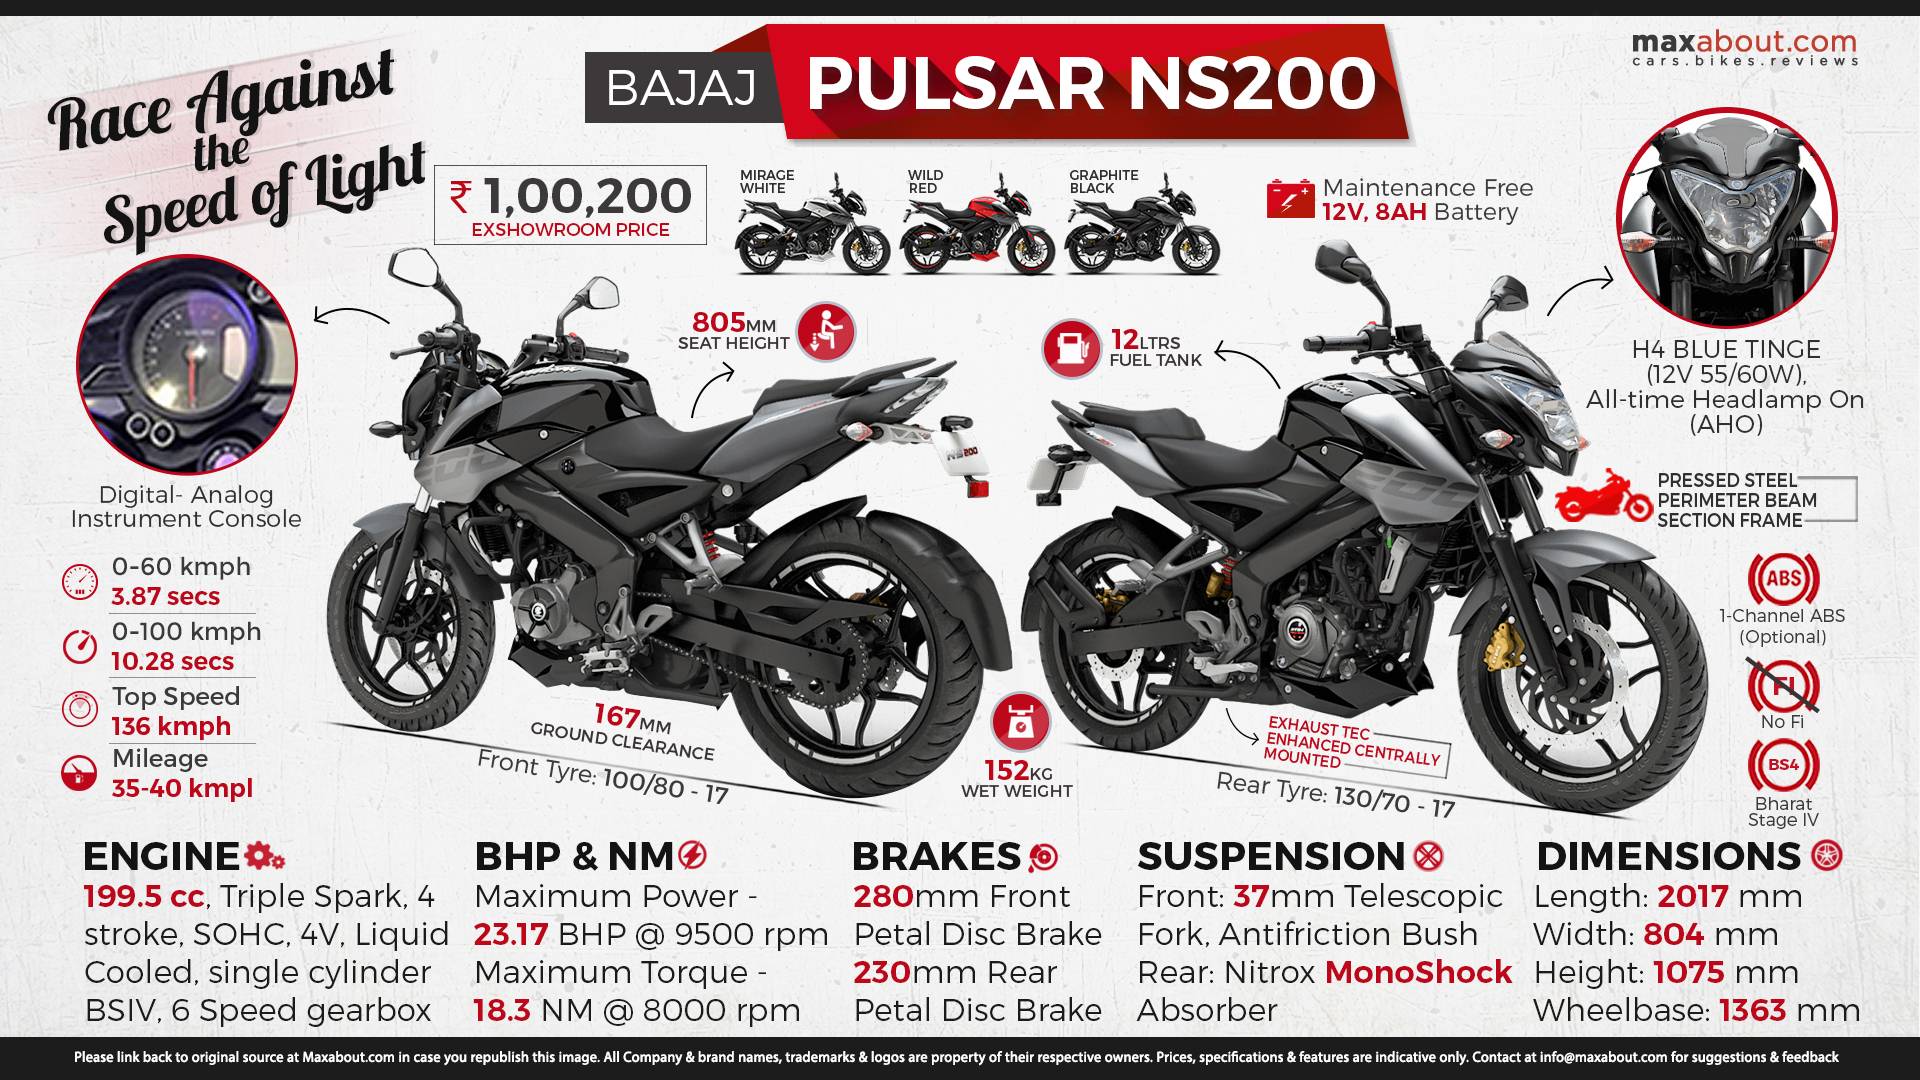 Мотоциклы bajaj: фото, видео, стоимость, характеристики мотоциклов bajaj